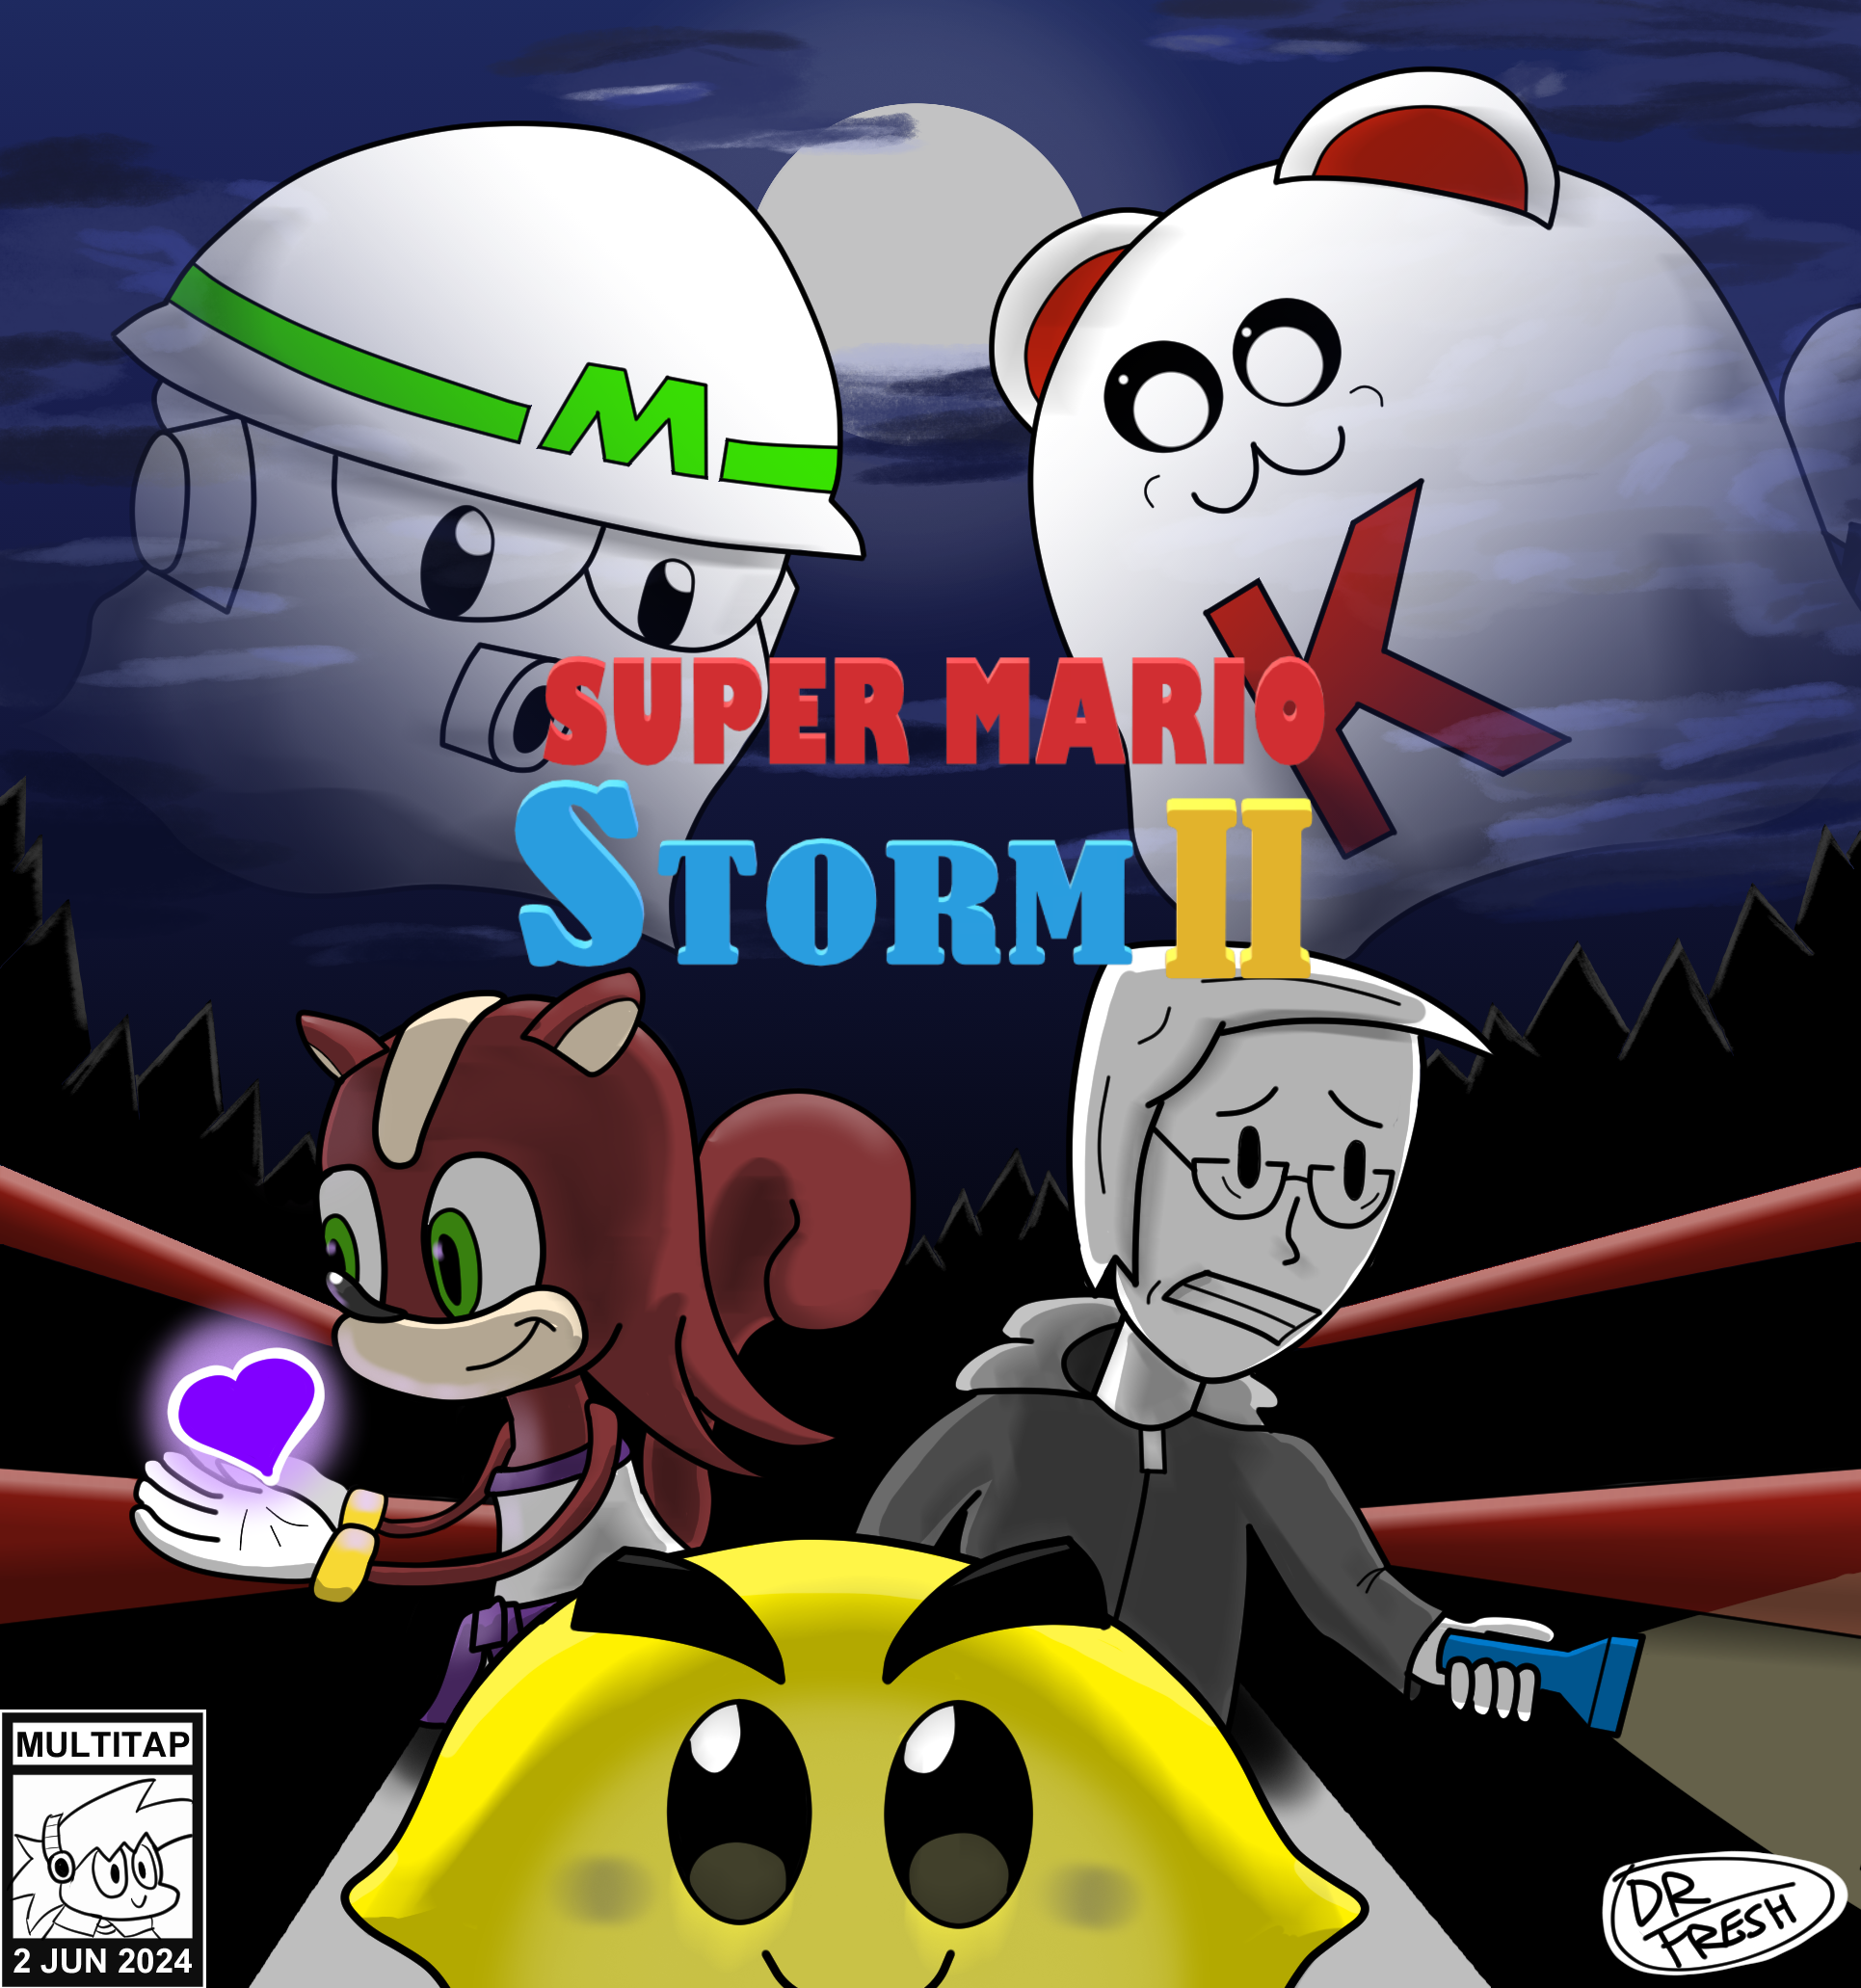 Super Mario Storm 2